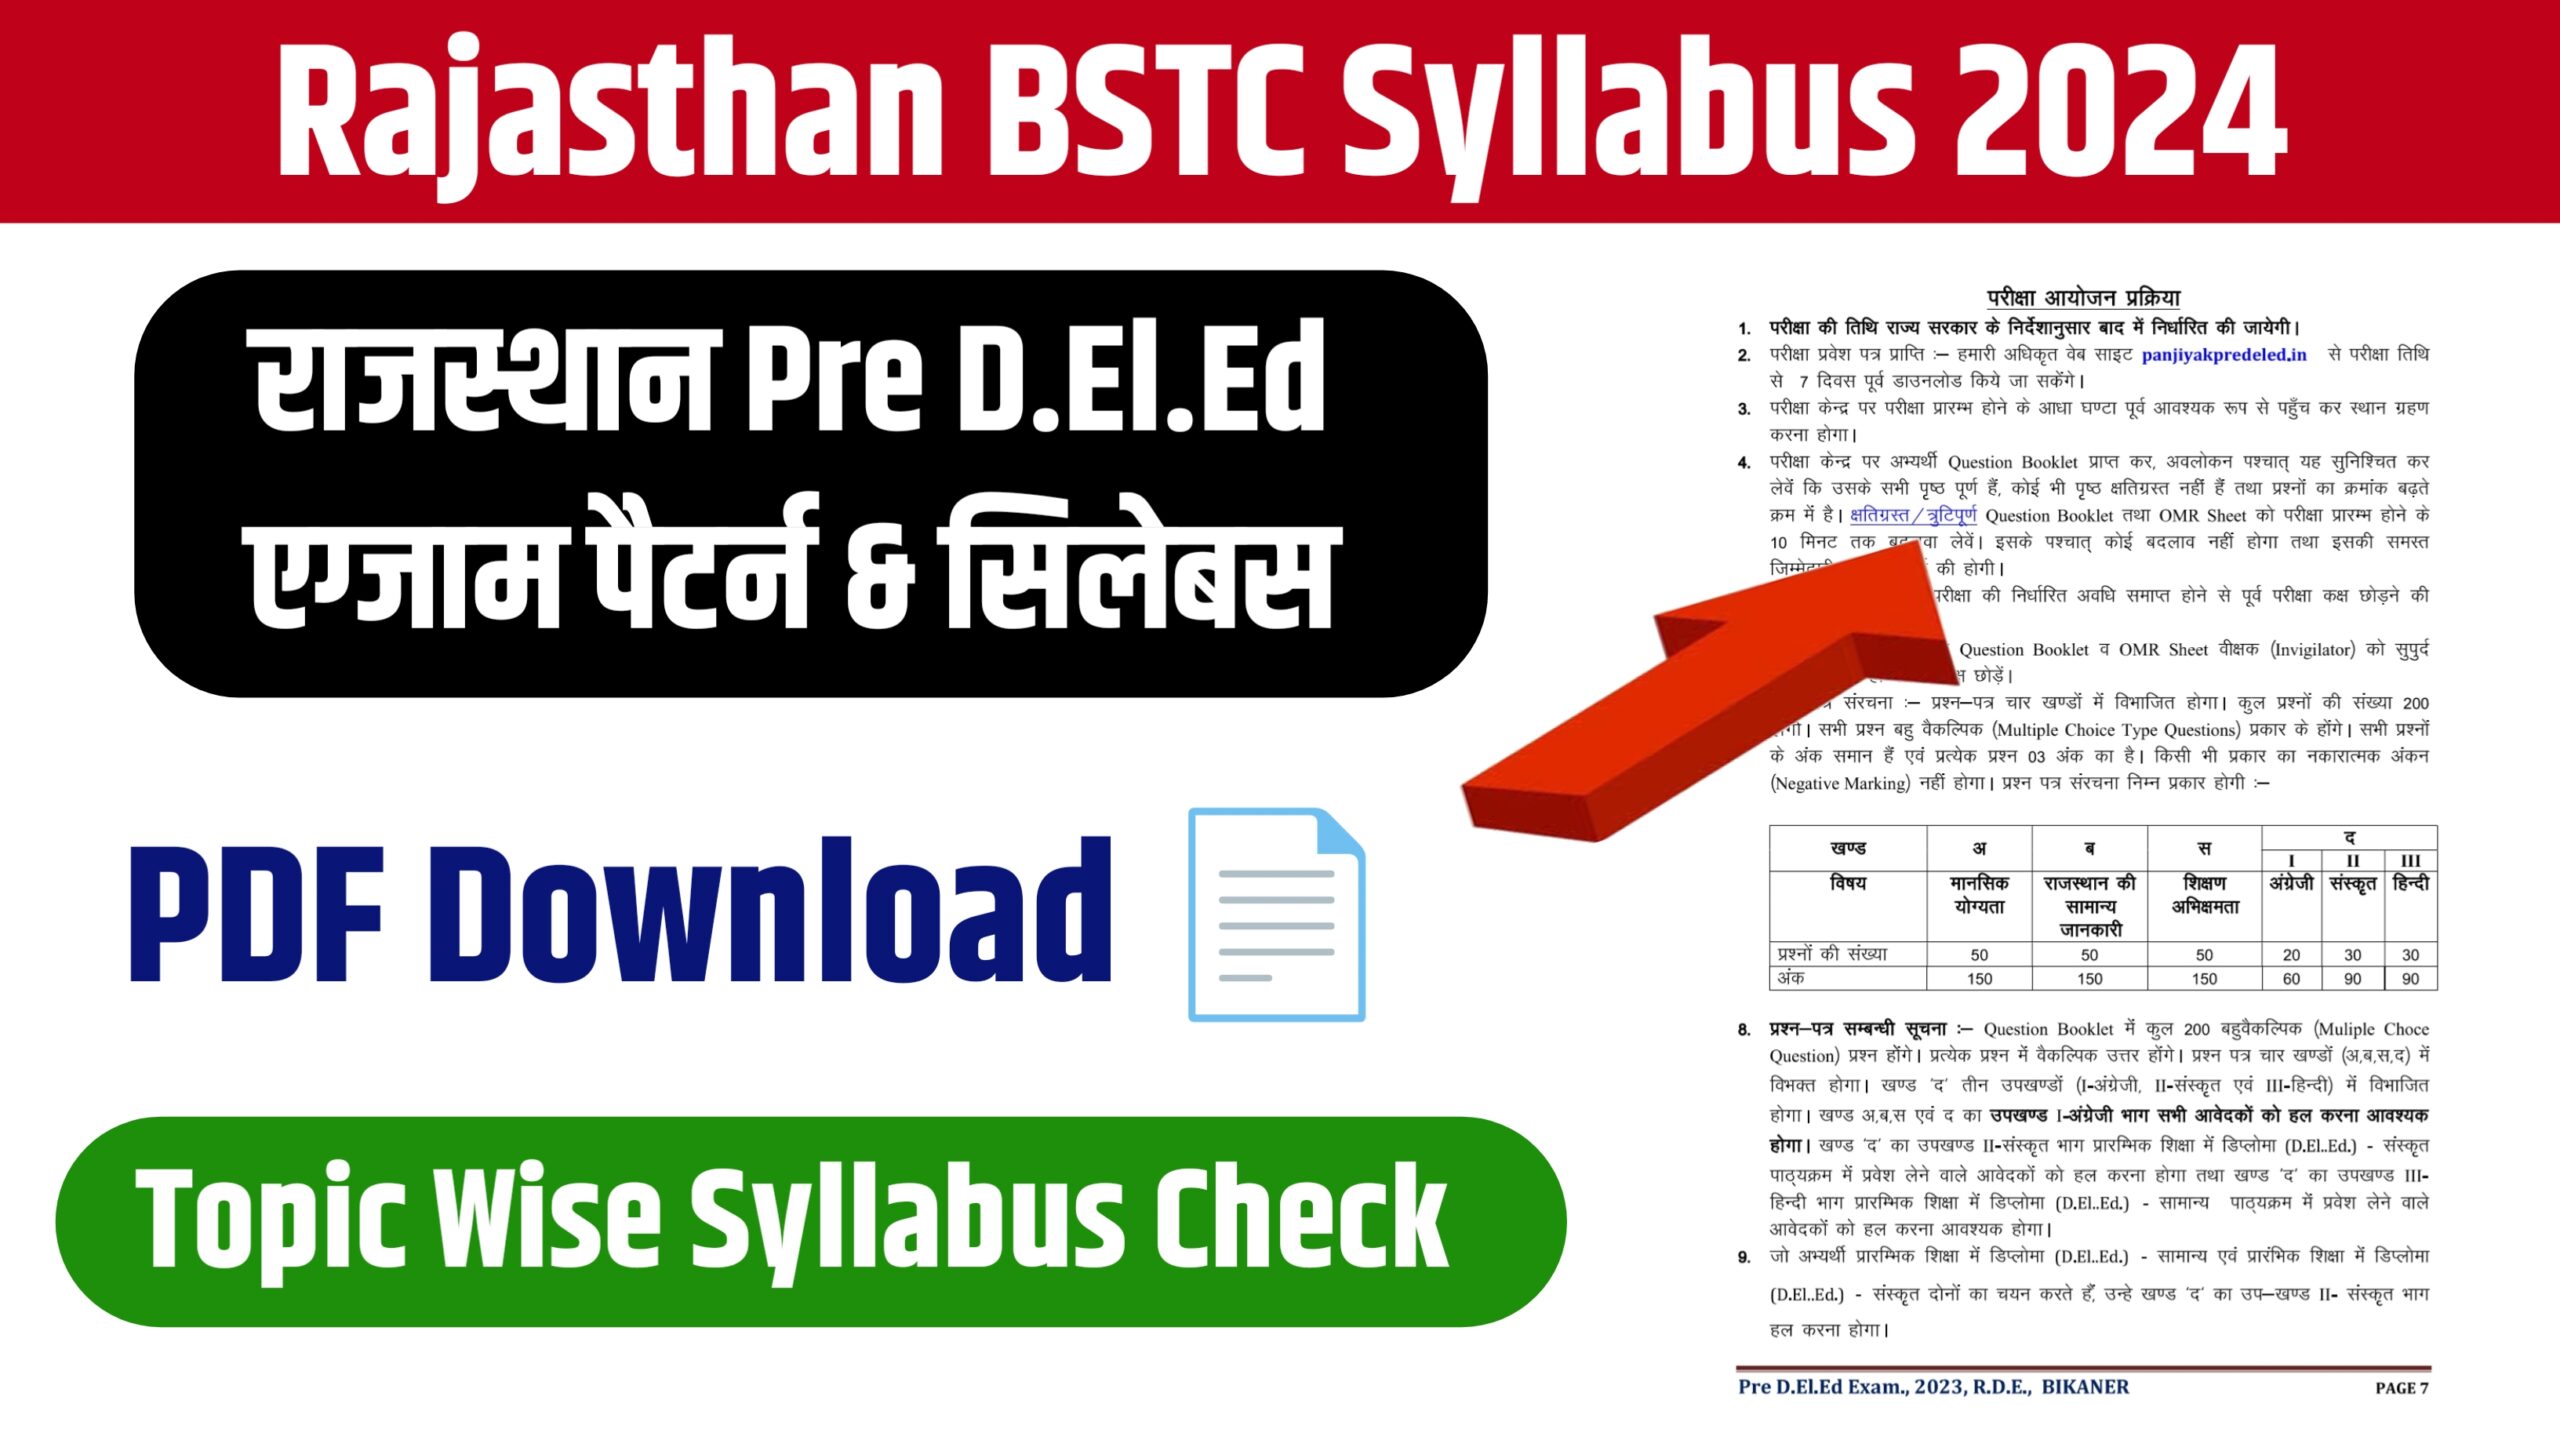 Rajasthan BSTC Syllabus 2024 : राजस्थान बीएसटीसी परीक्षा 2024 के लिए सिलेबस और एग्जाम पैटर्न जारी , यहां से चेक करें